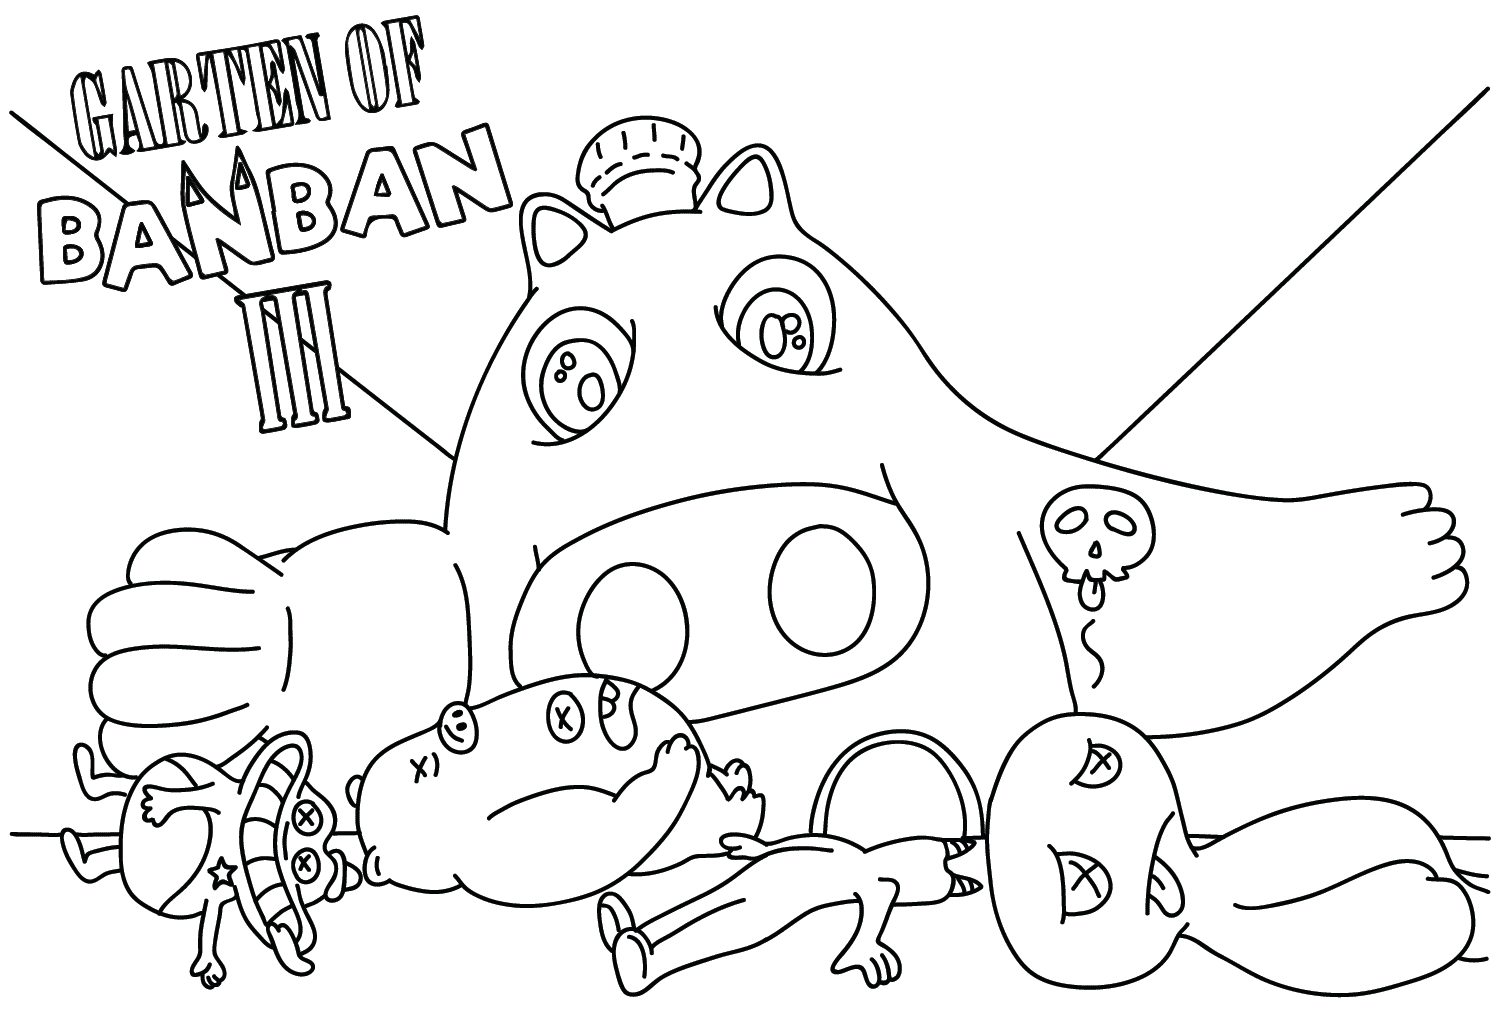 Página para colorir de todos os personagens do Jardim de Banban 3 -  Desenhos para colorir gratuitos para impressão